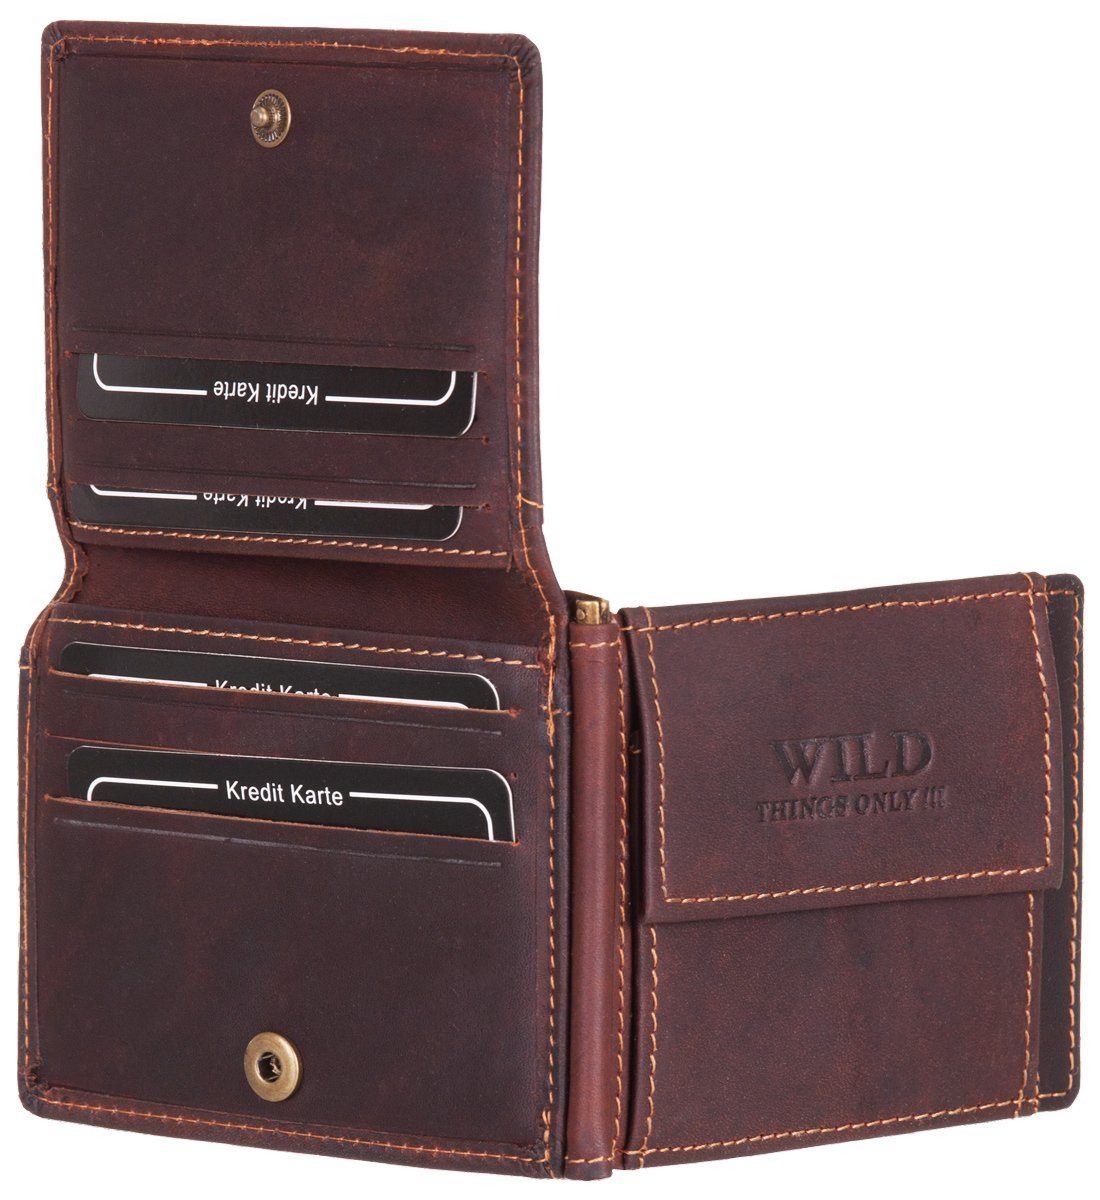 RFID-Schutz Geldclip Leder Portemonnaie Münzfach Geldbeutel braun Echt STREET mit Geldbörse, BAG Geldklammer